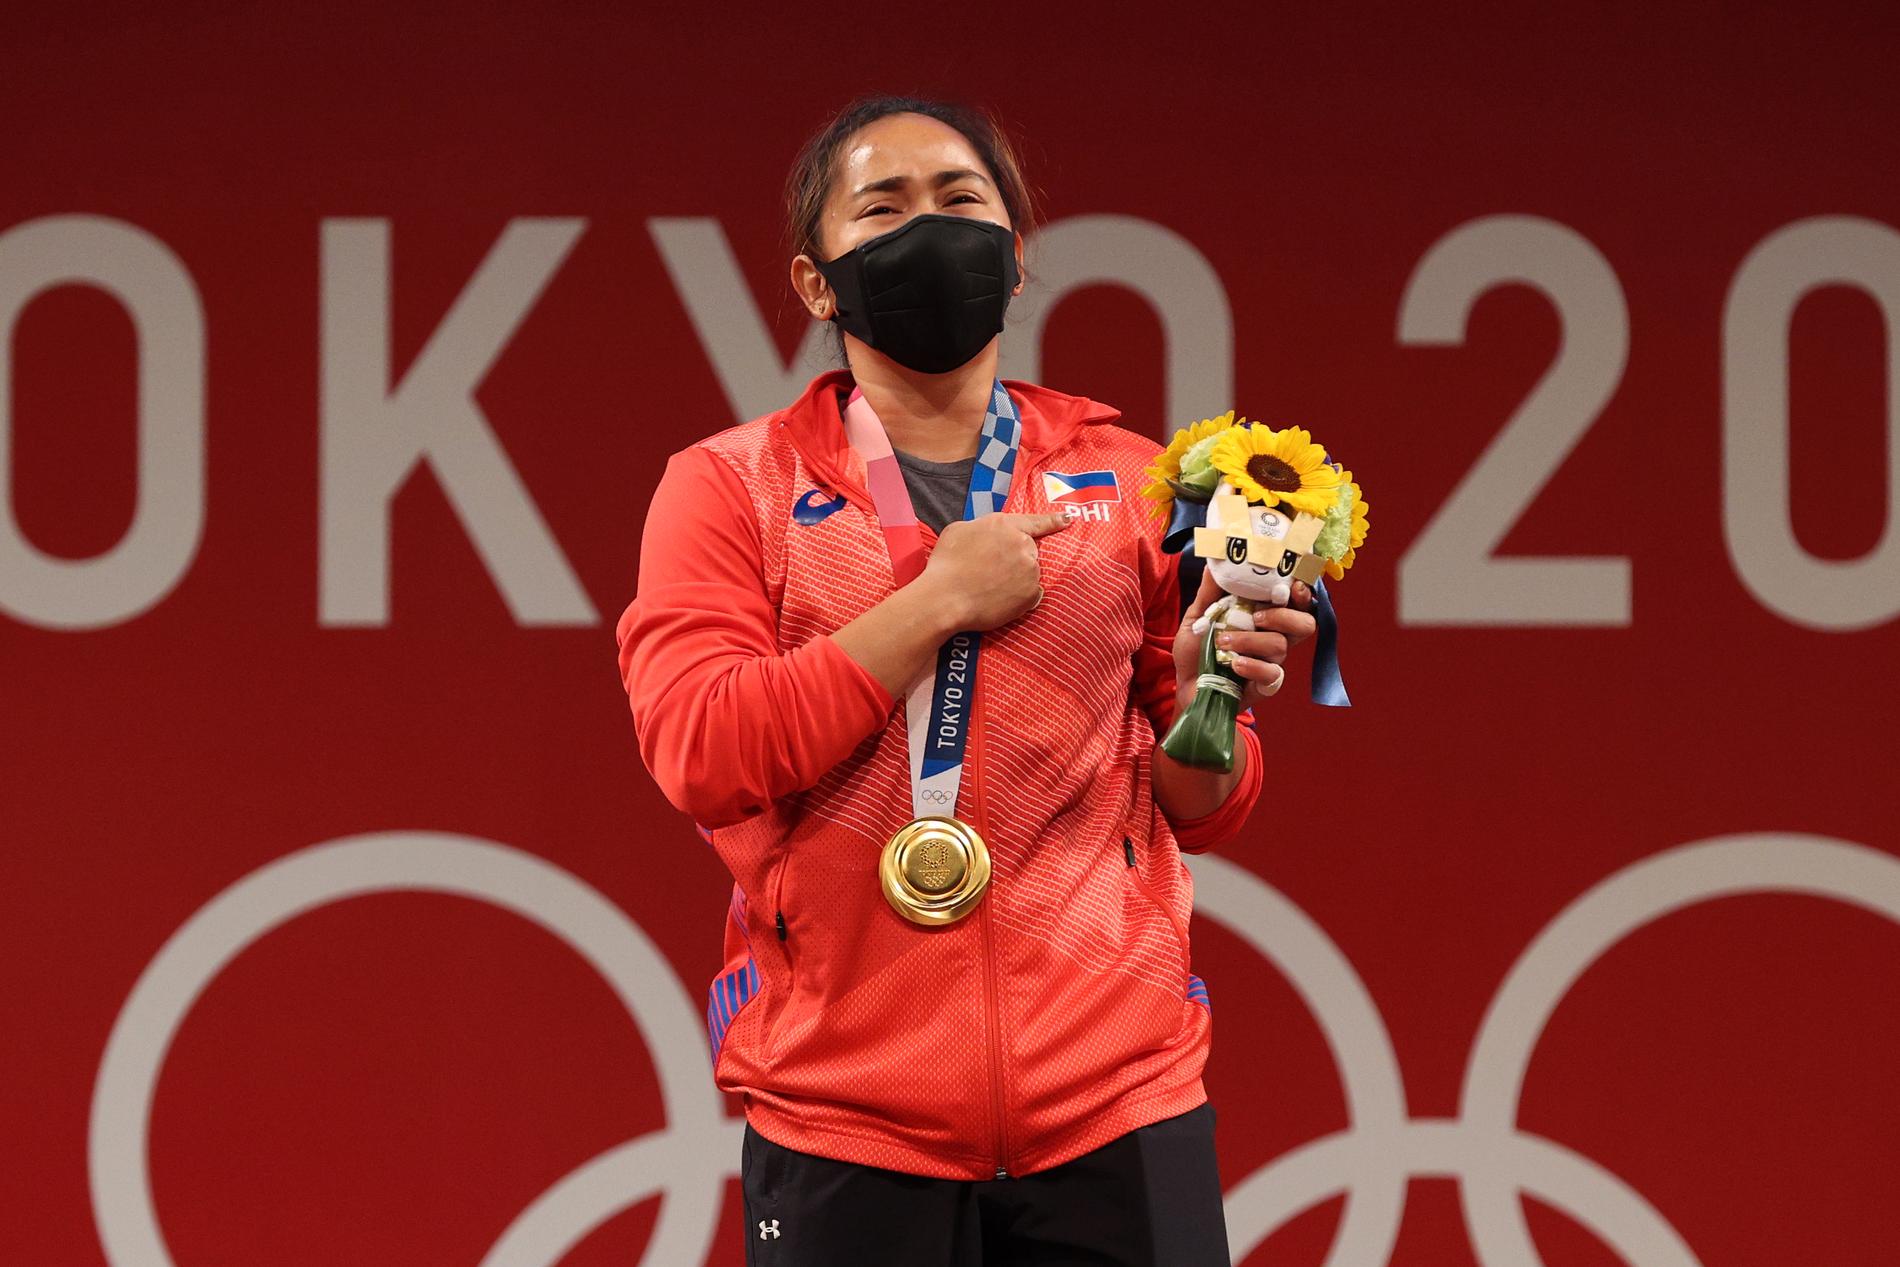 Hidilyn Diaz vann OS-guld – och något mer än ett gosedjur.